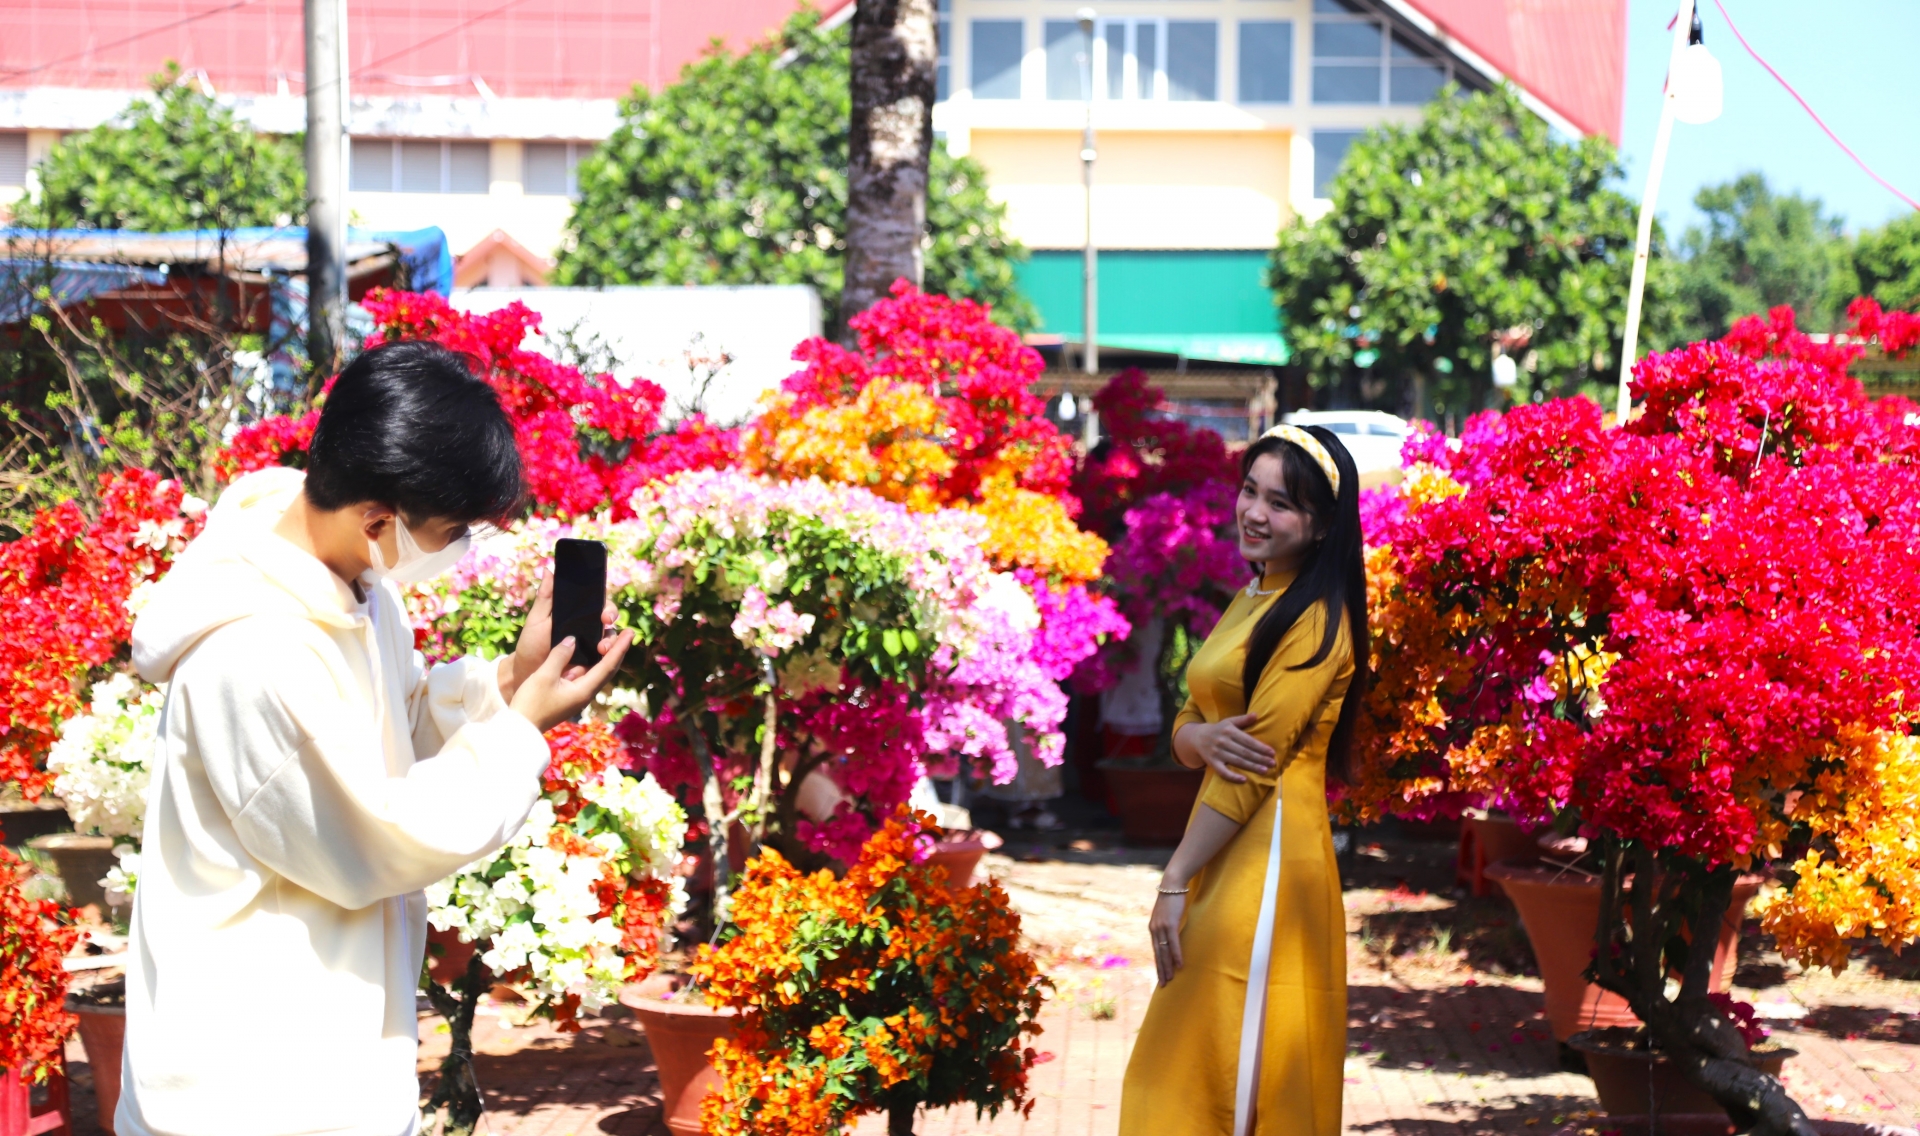 Các bạn trẻ tìm đến chợ hoa xuân vui chơi, chụp hình tạo thêm không khí vui tươi, nhọn nhịp tại các chợ hoa xuân